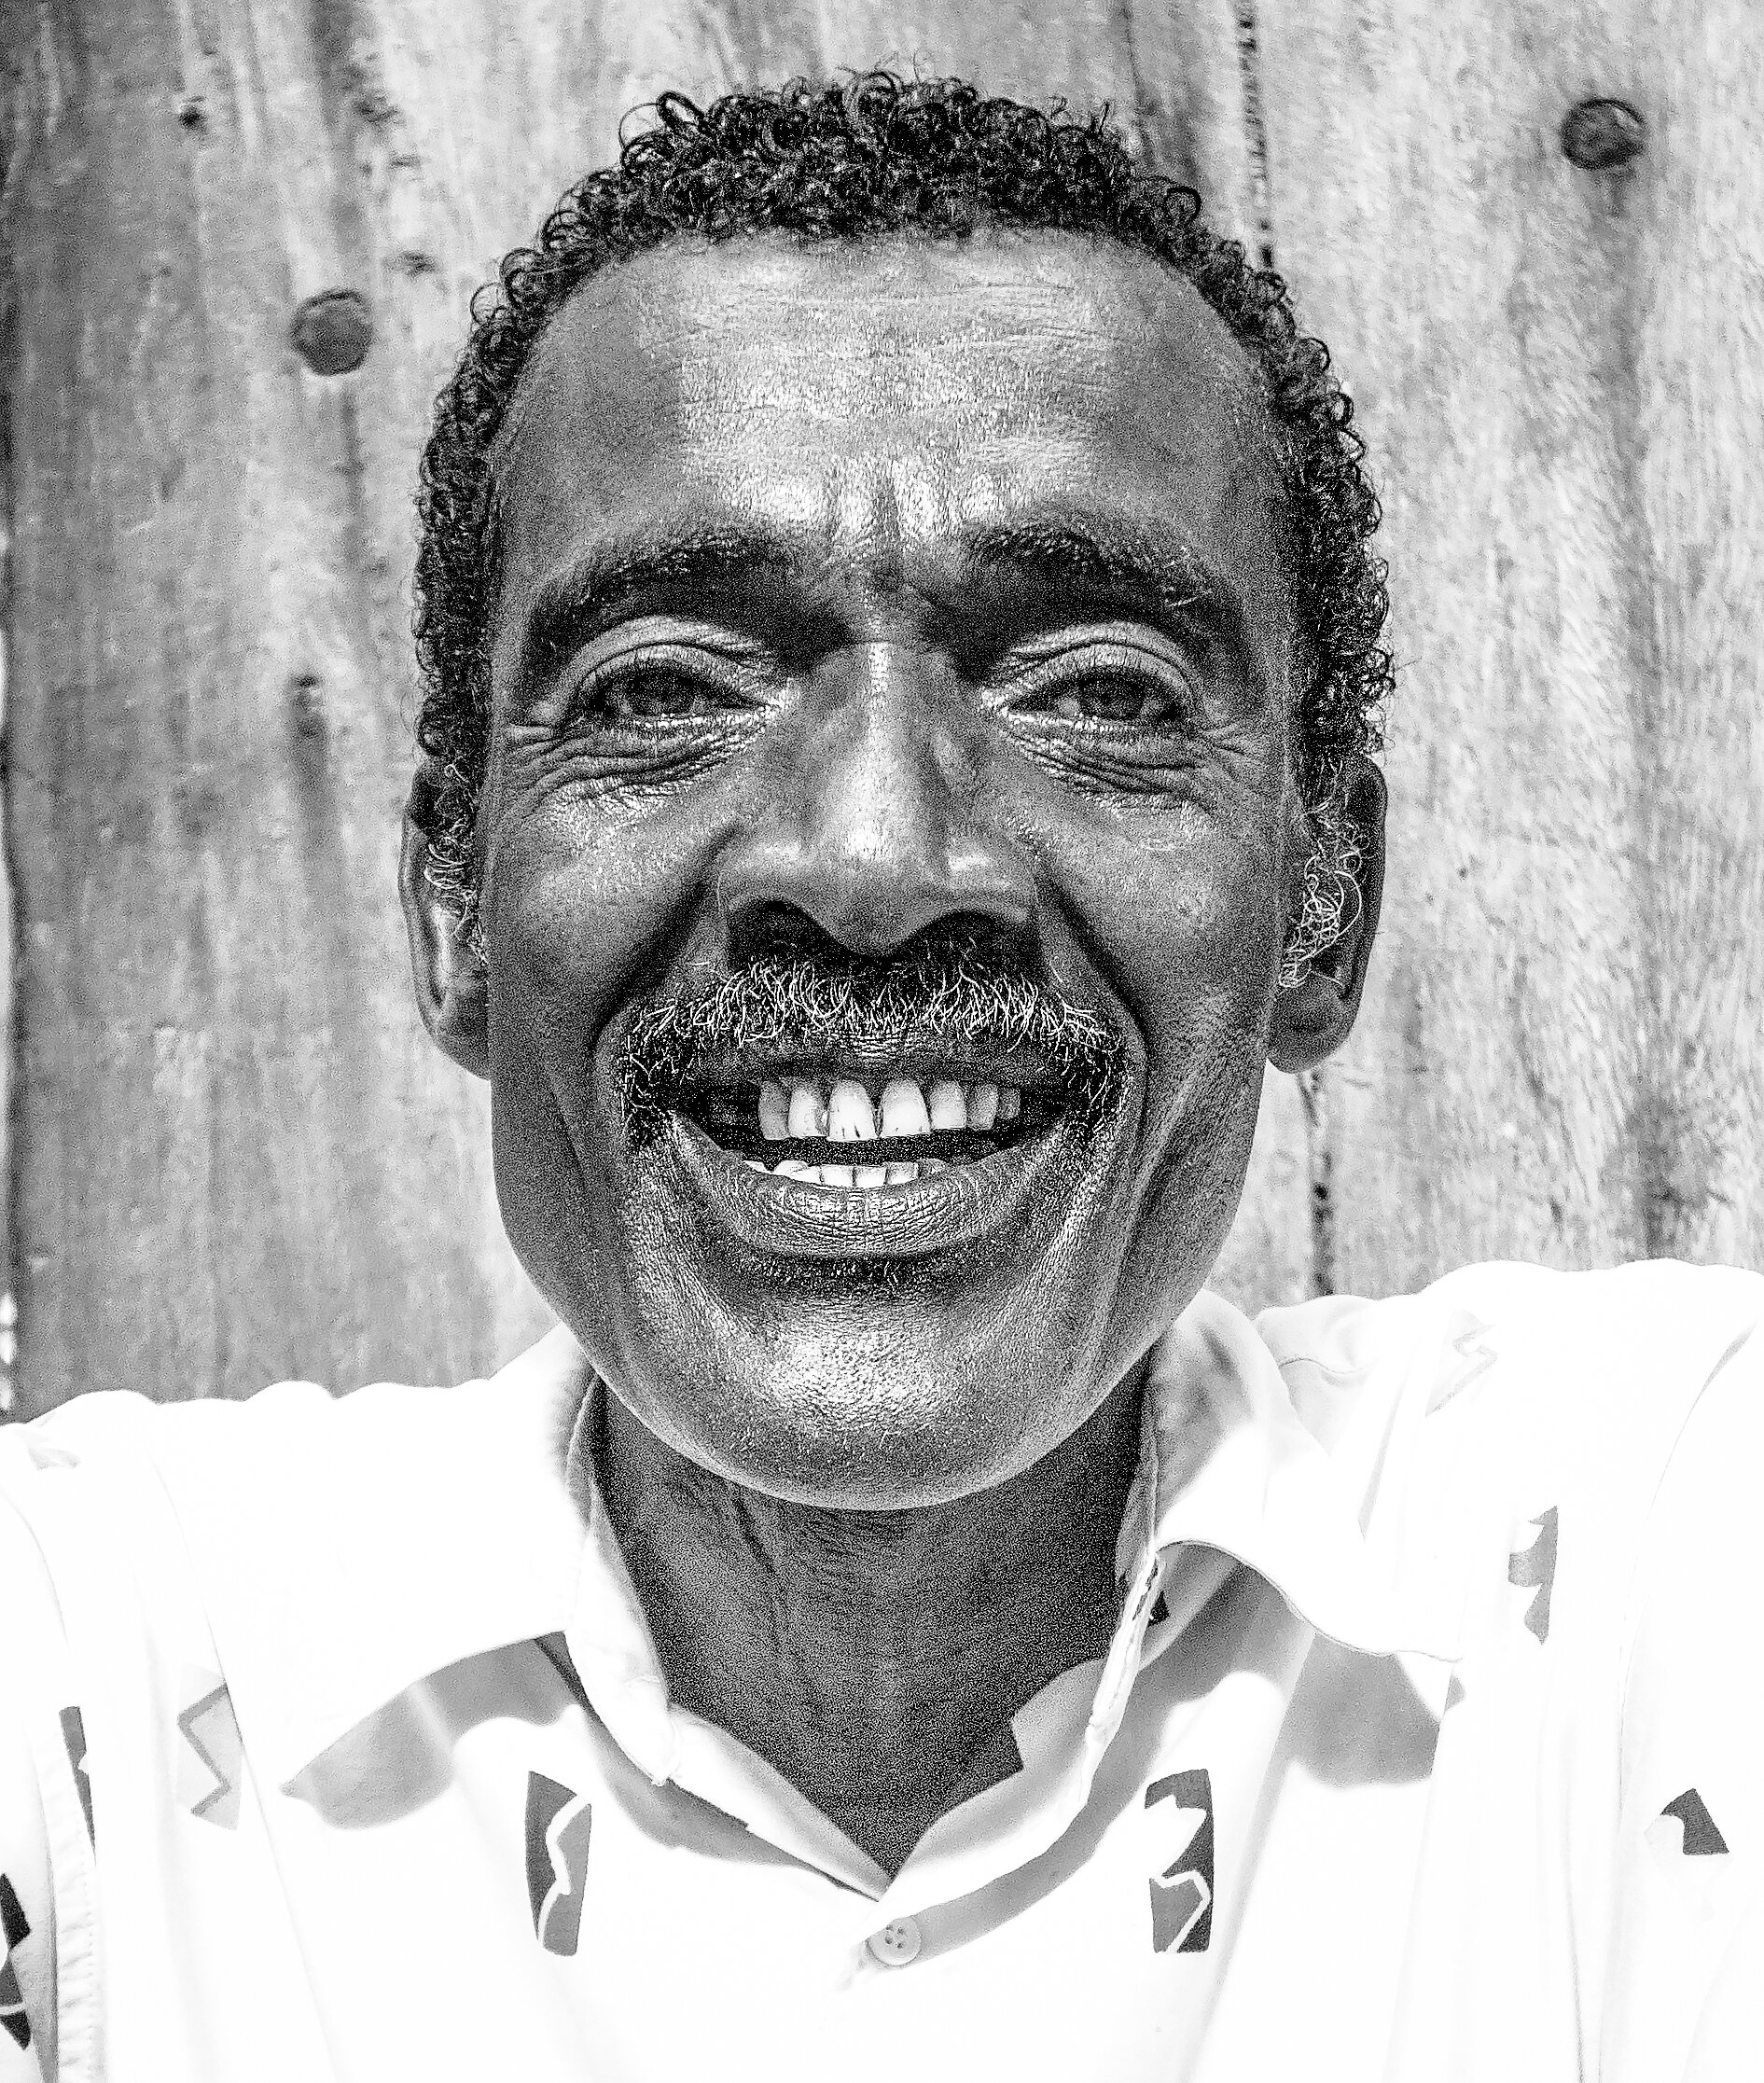 Lamu Man Smile (1 of 1).jpg